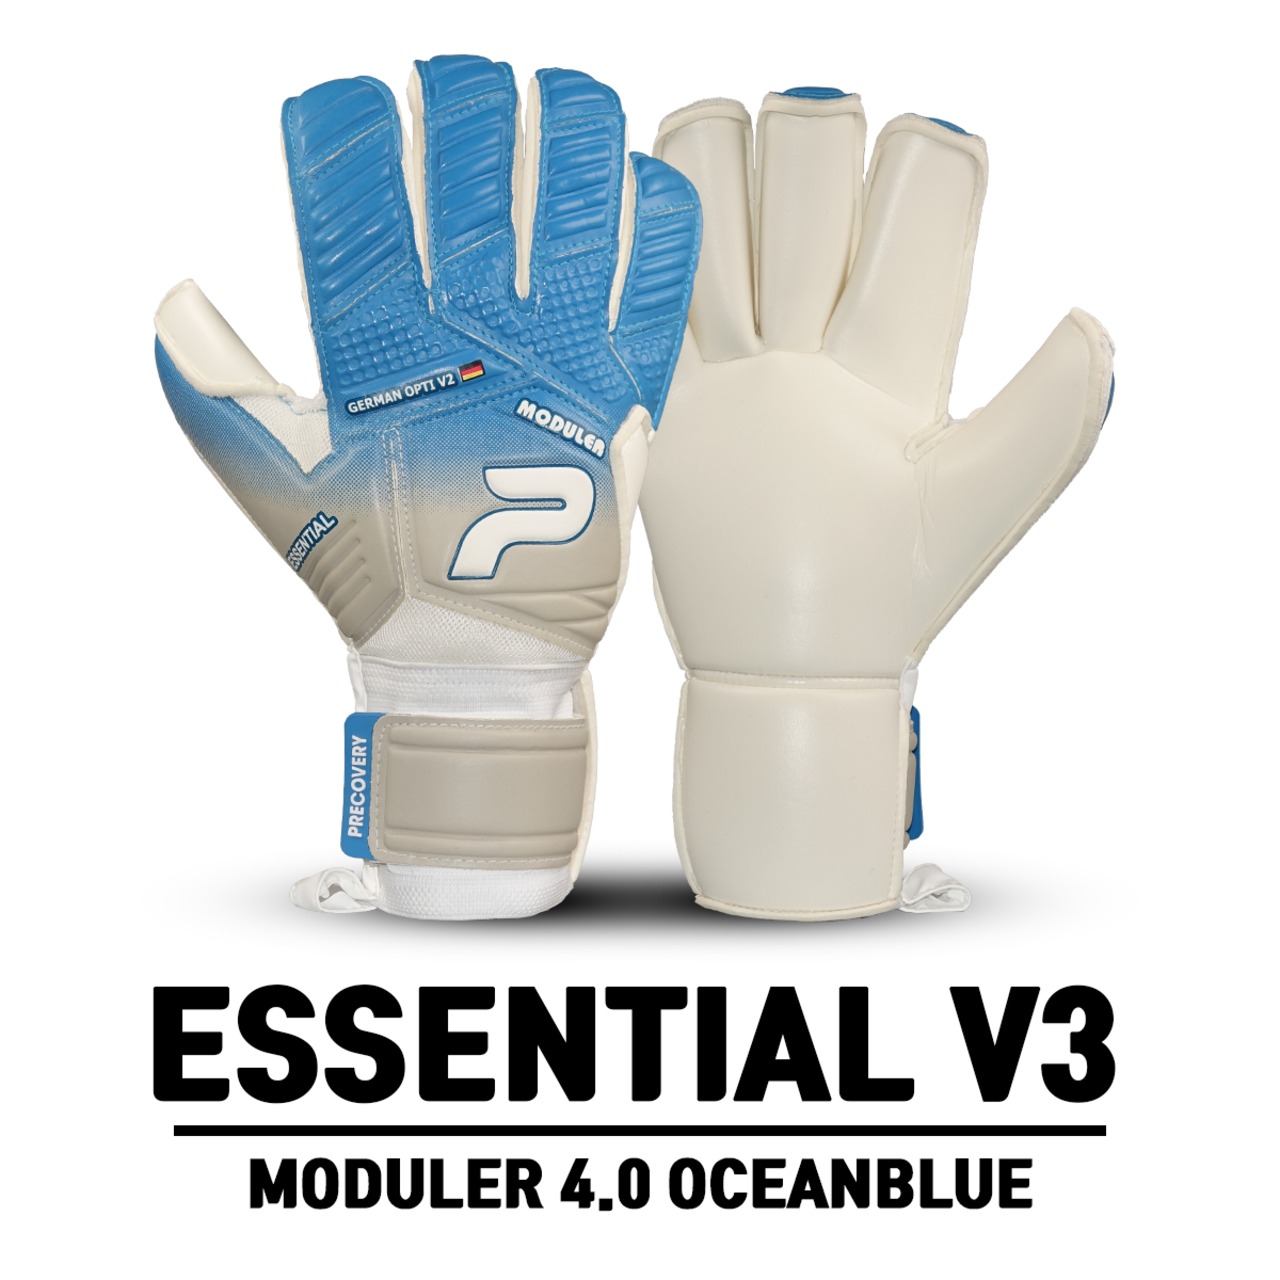 MODULER 4.0 ESSENTIAL V3 OCEANBLUE